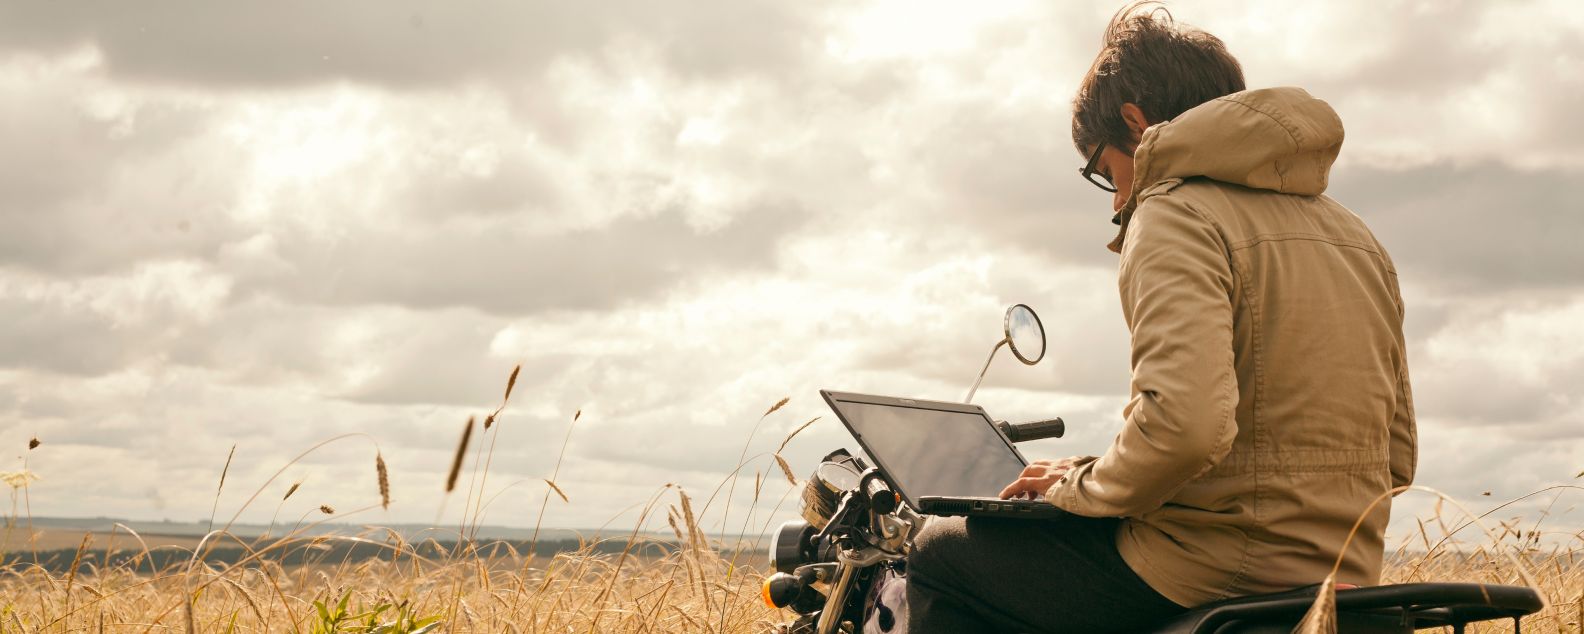 Persona sentada en una motocicleta mientras trabaja en una computadora portátil